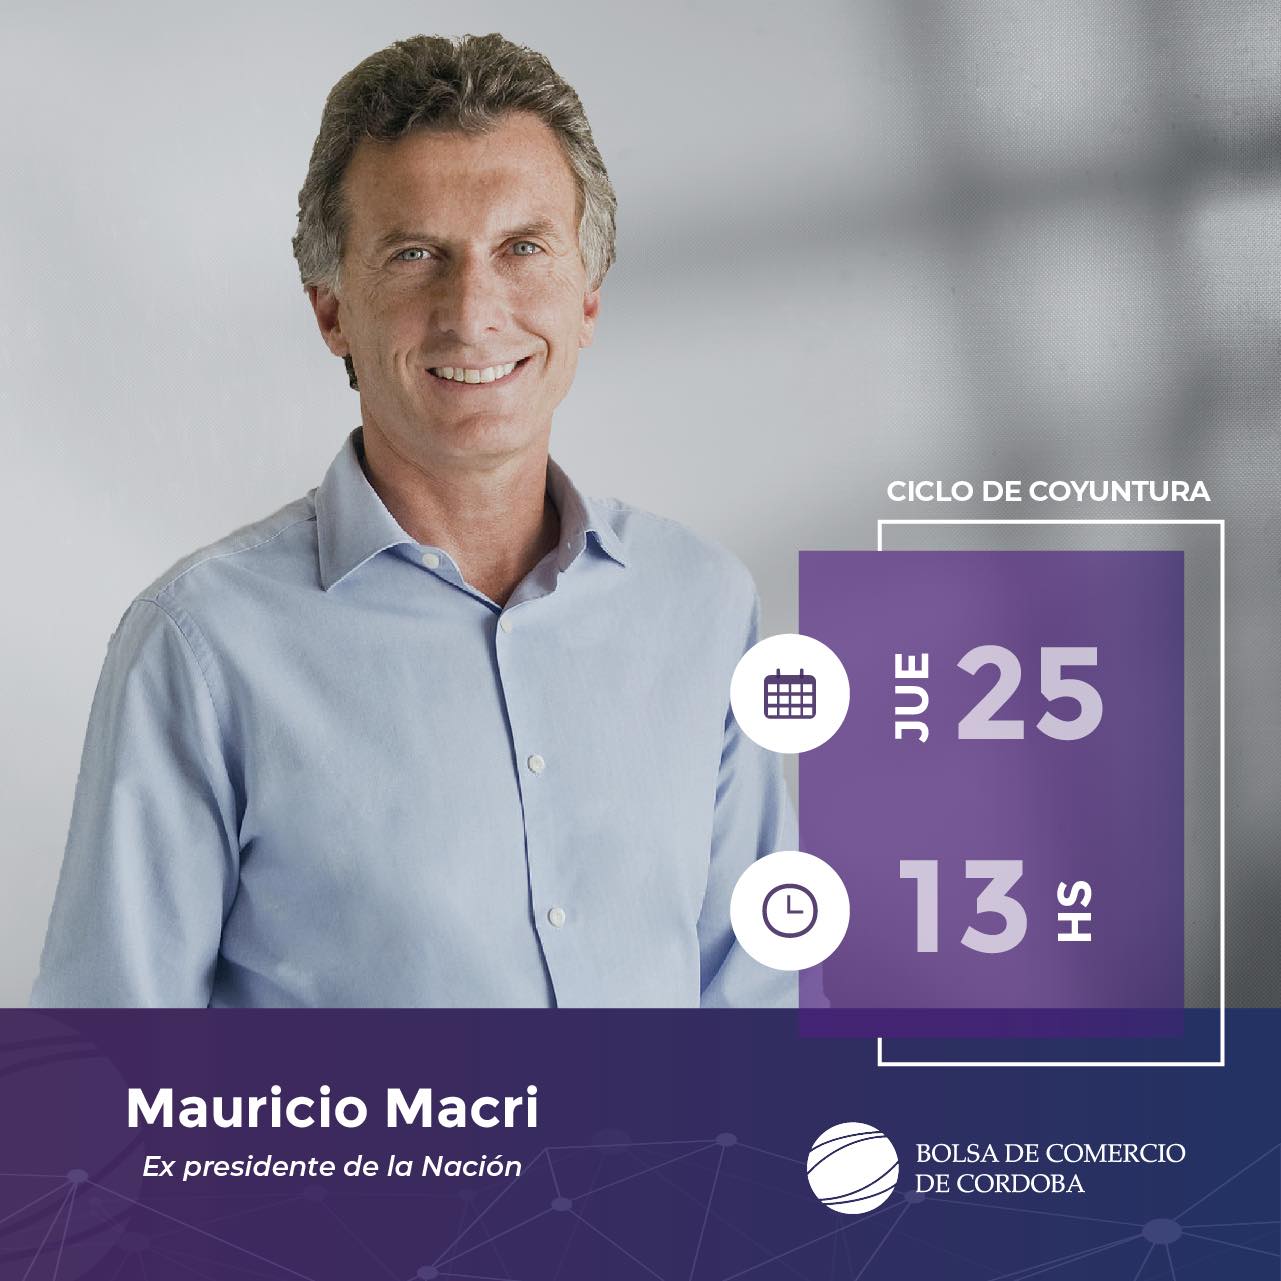 Mauricio Macri: "Se vienen veinte años de claridad" • Canal C